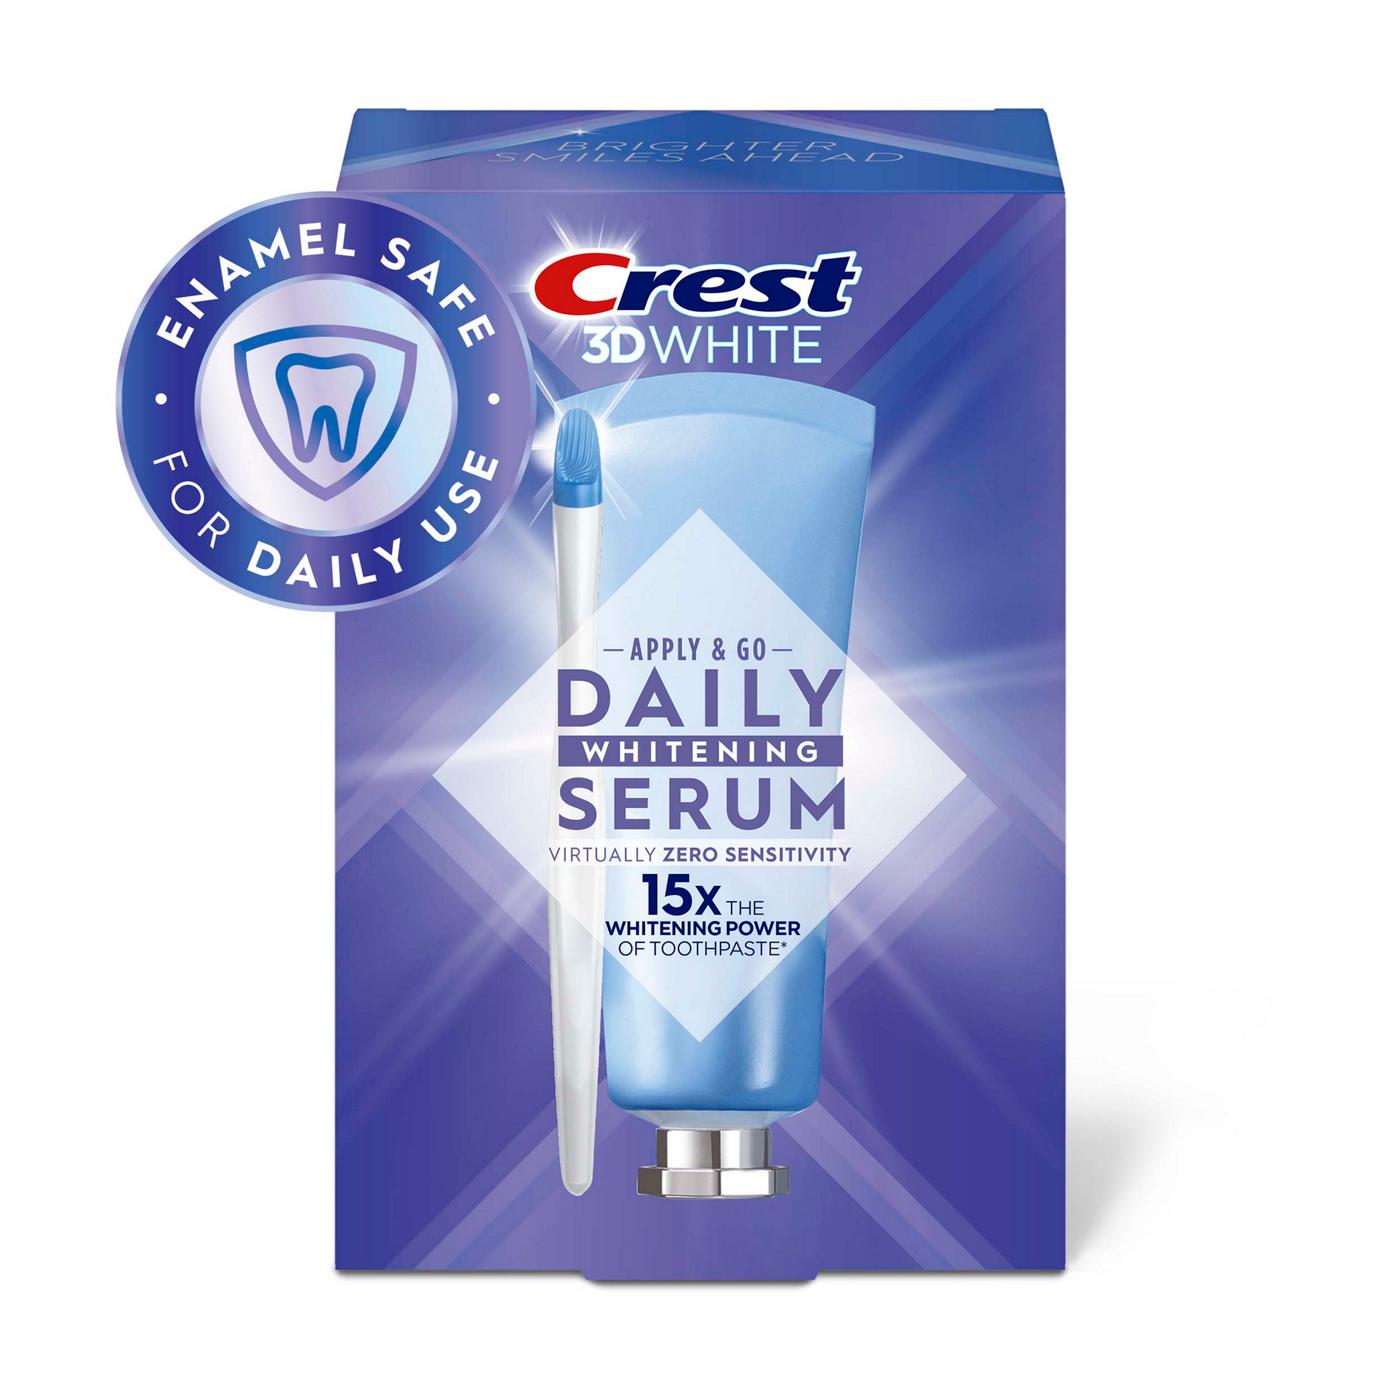 Crest 3D White Apply & Go Daily Whitening Serum Kit - Fresh Mint; image 1 of 10